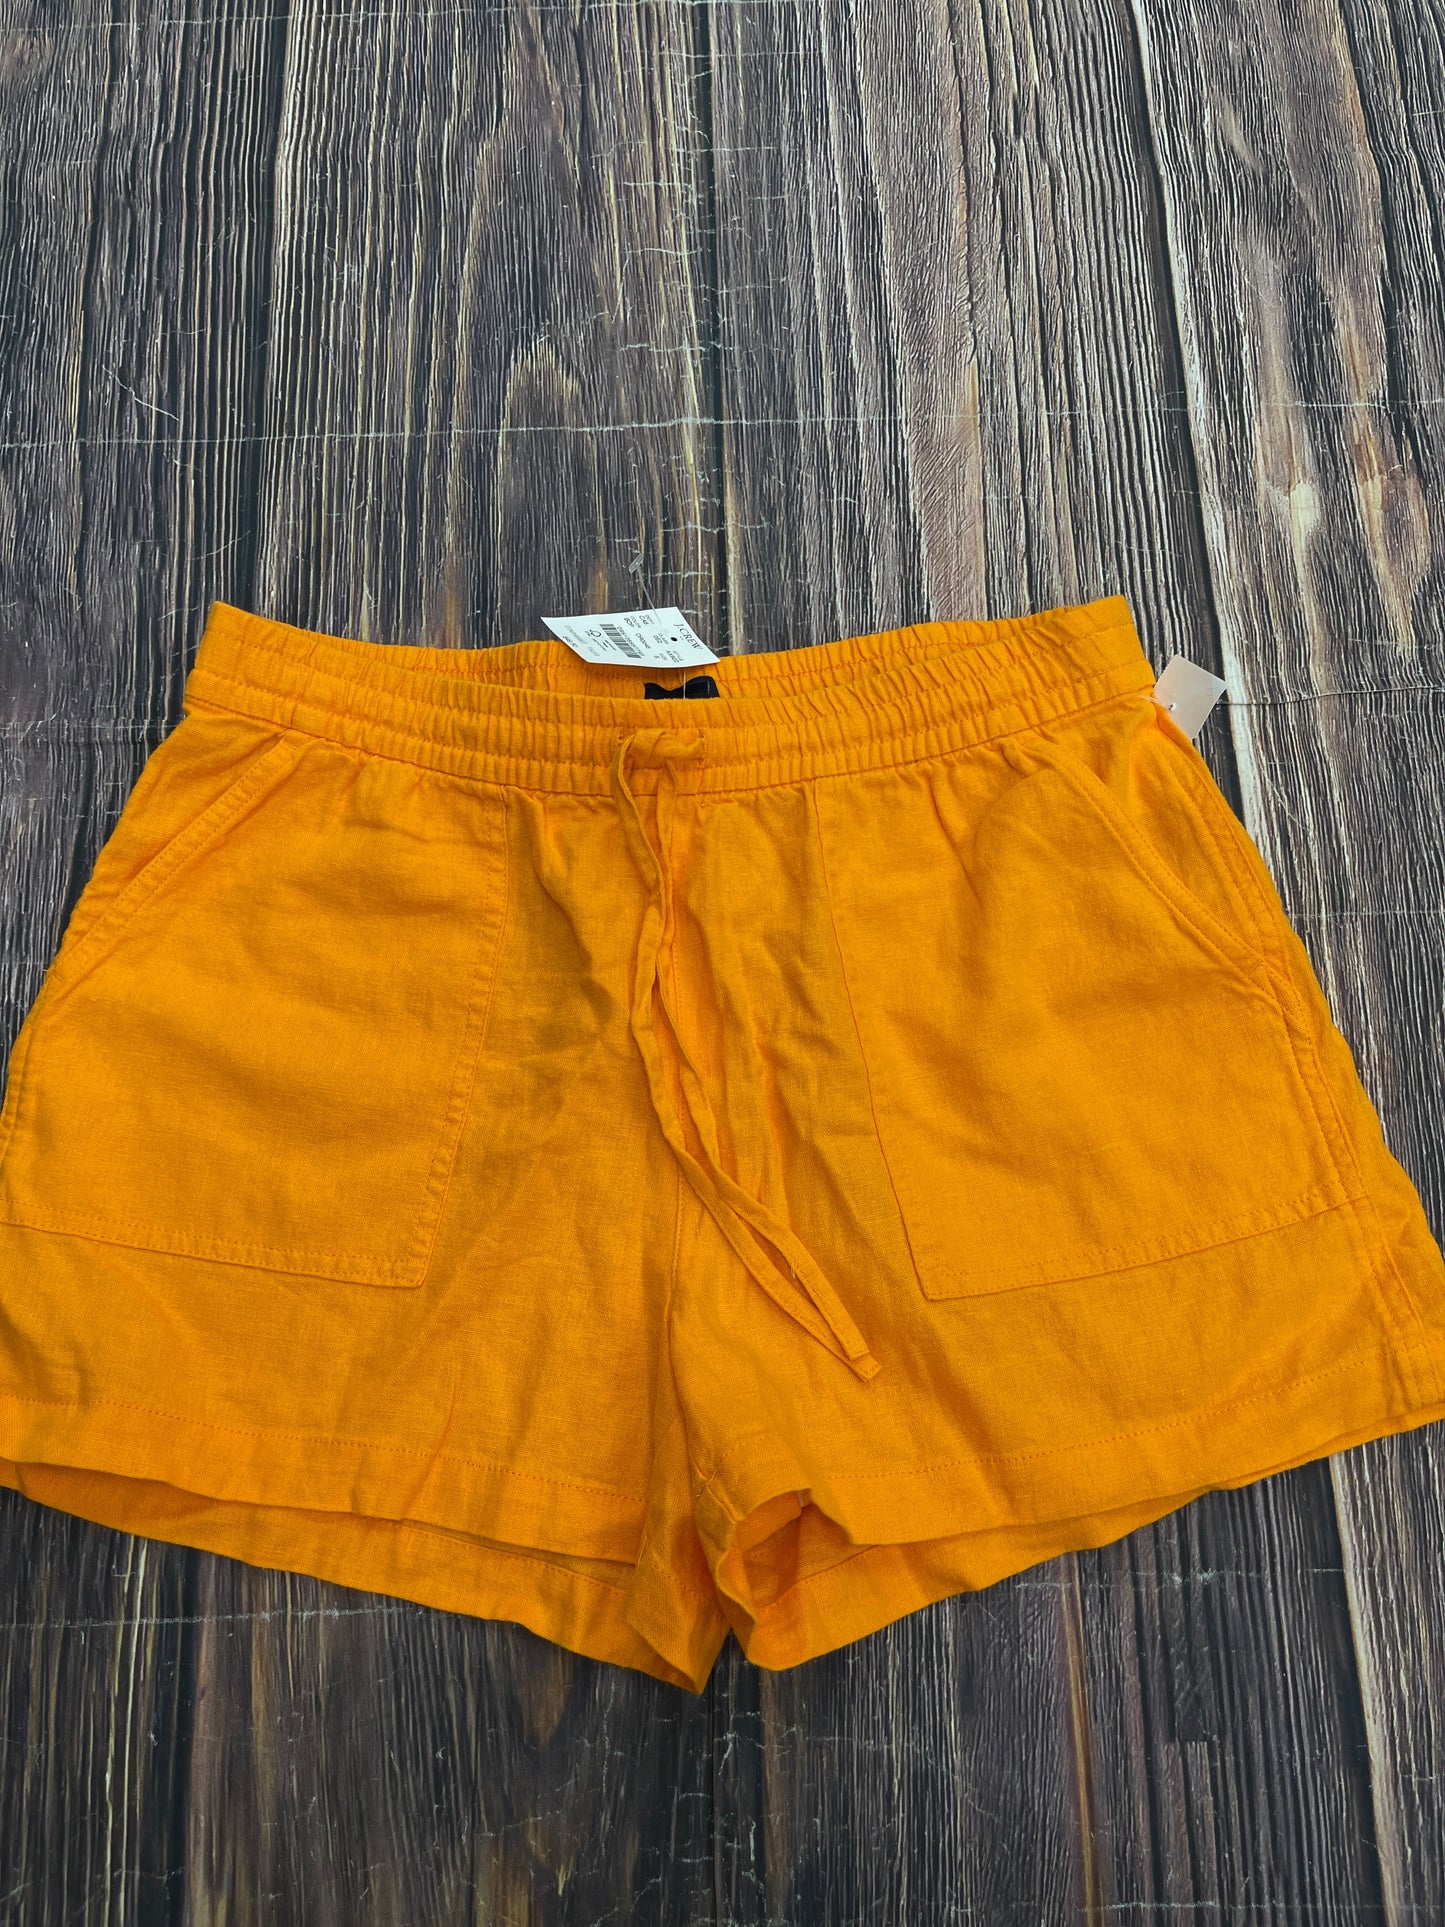 Orange Shorts J. Crew, Size S